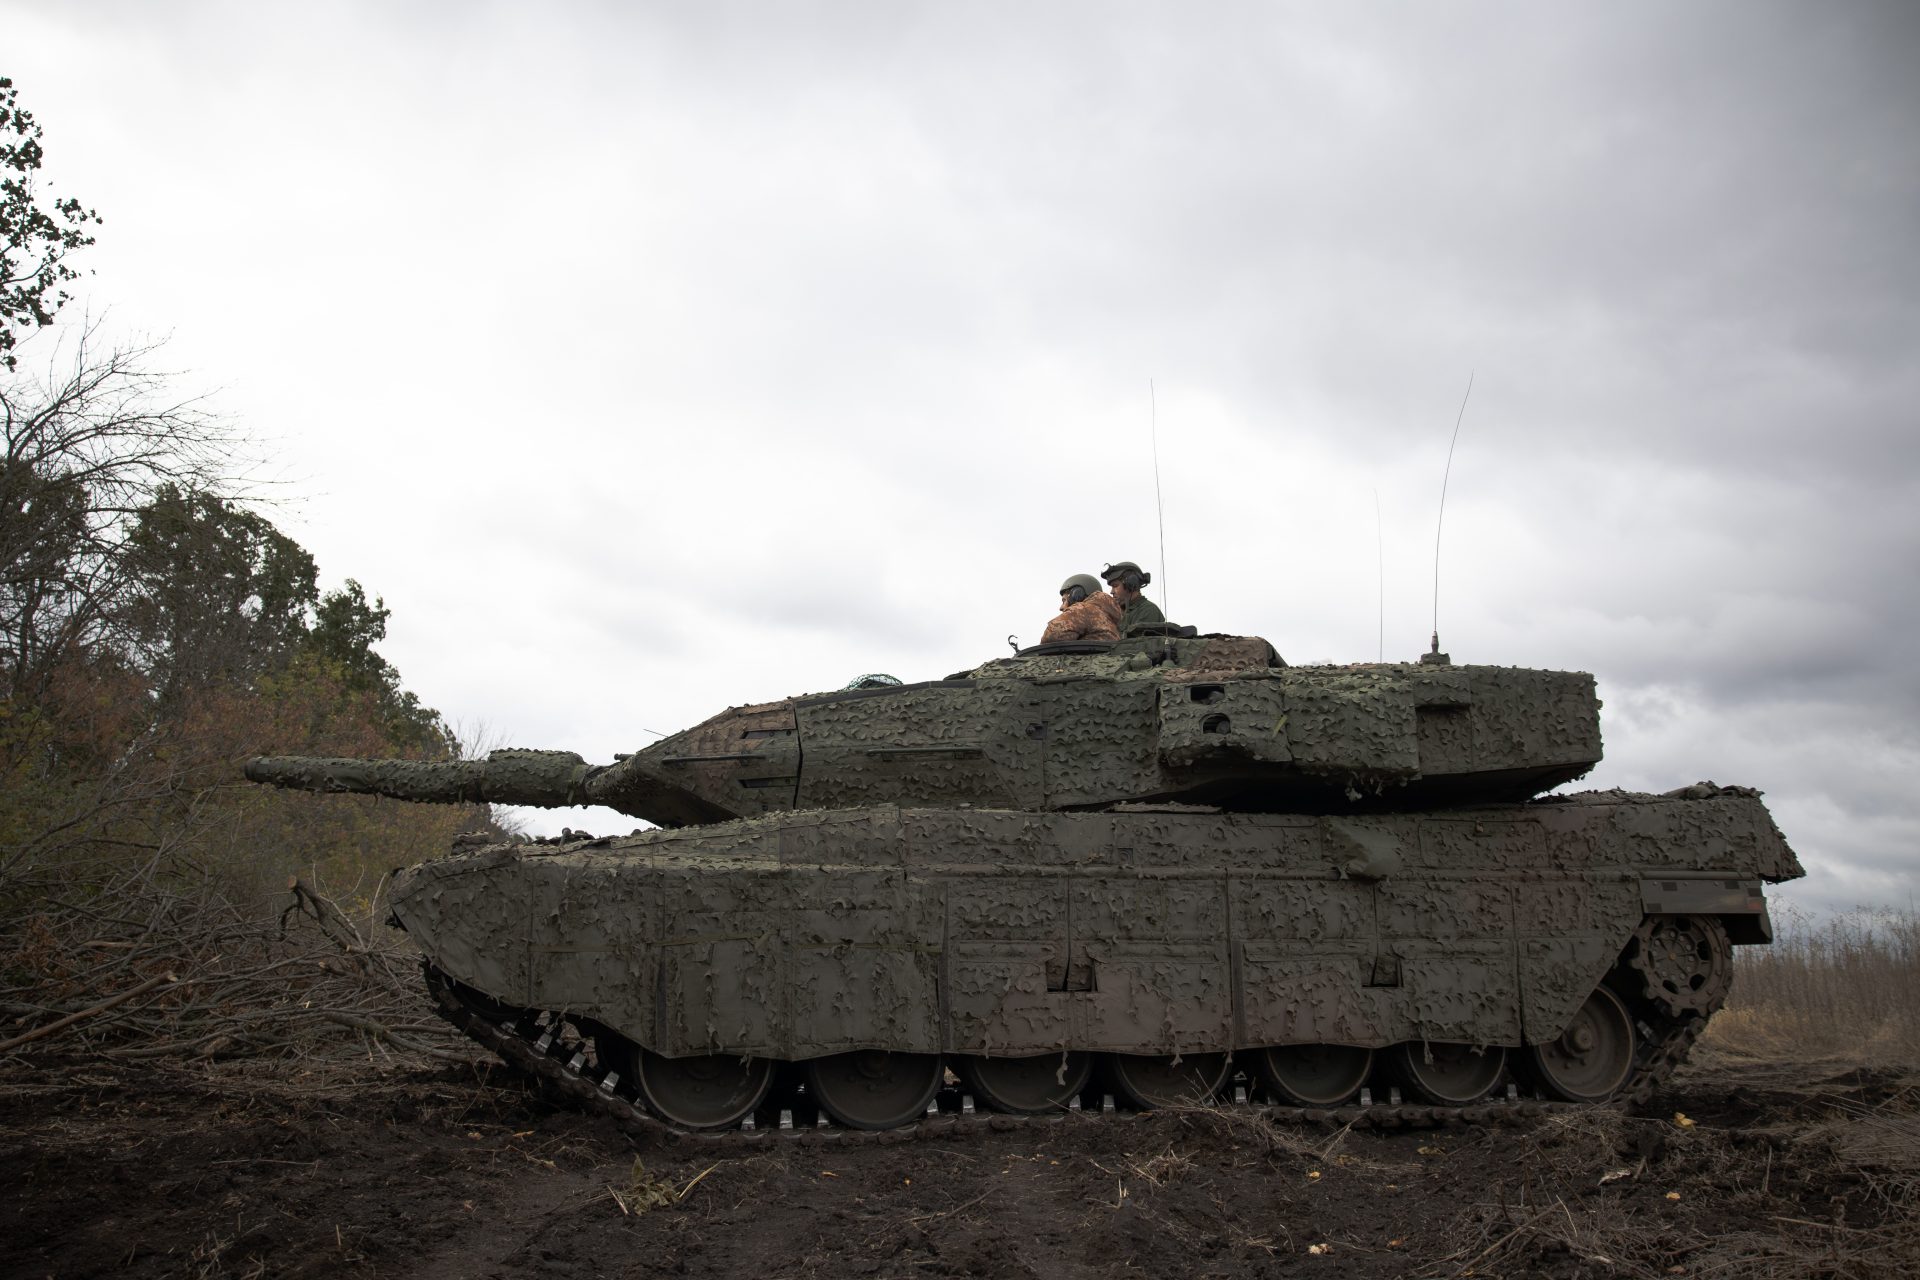 O poderoso armamento M-2 Bradley impressionou ao destruir um tanque russo